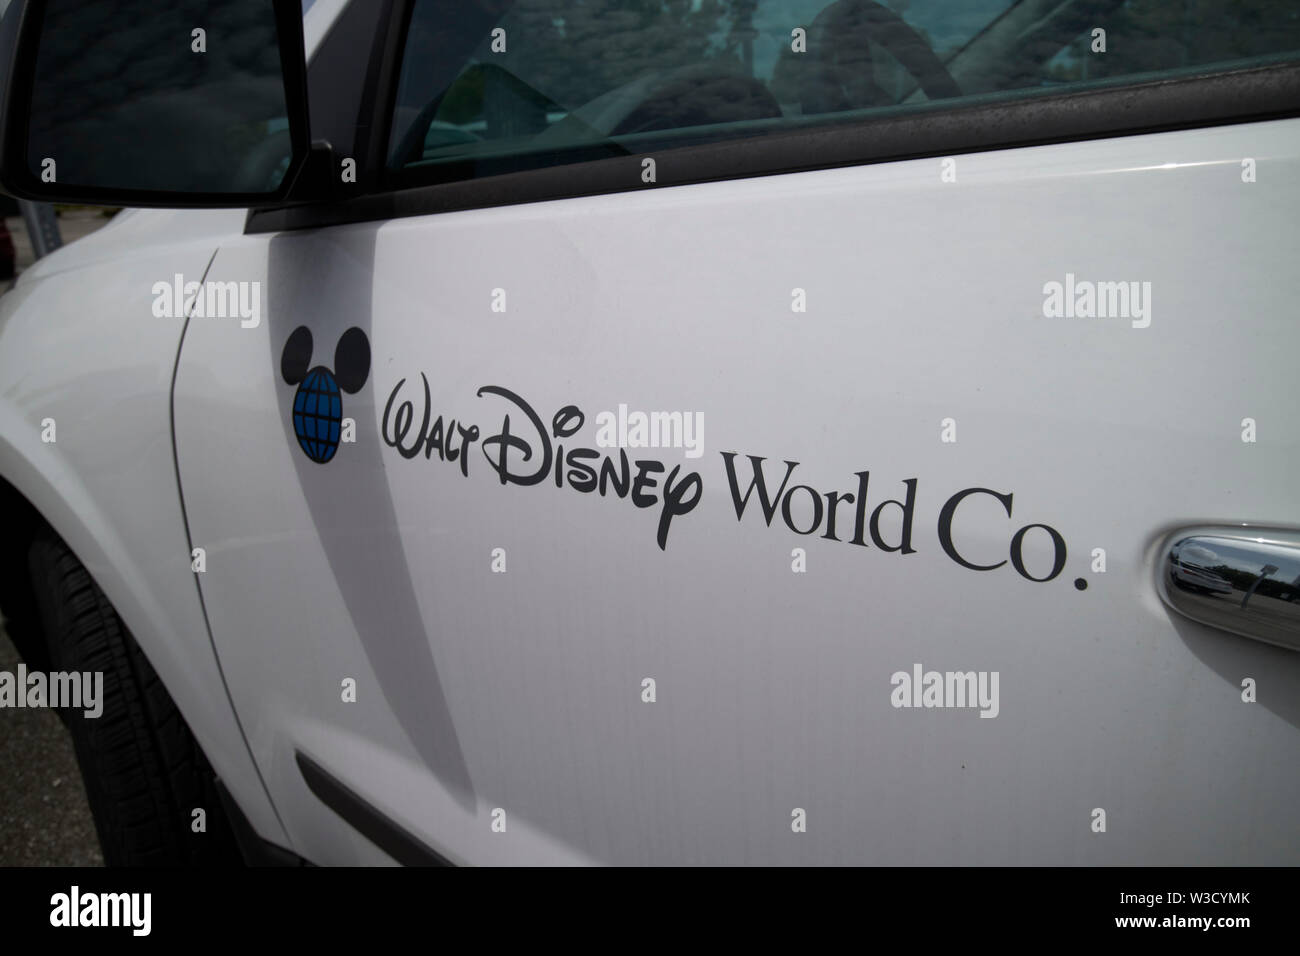 Walt Disney World co Firmenname und Logo auf einem Fahrzeug, Florida Vereinigte Staaten von Amerika Stockfoto